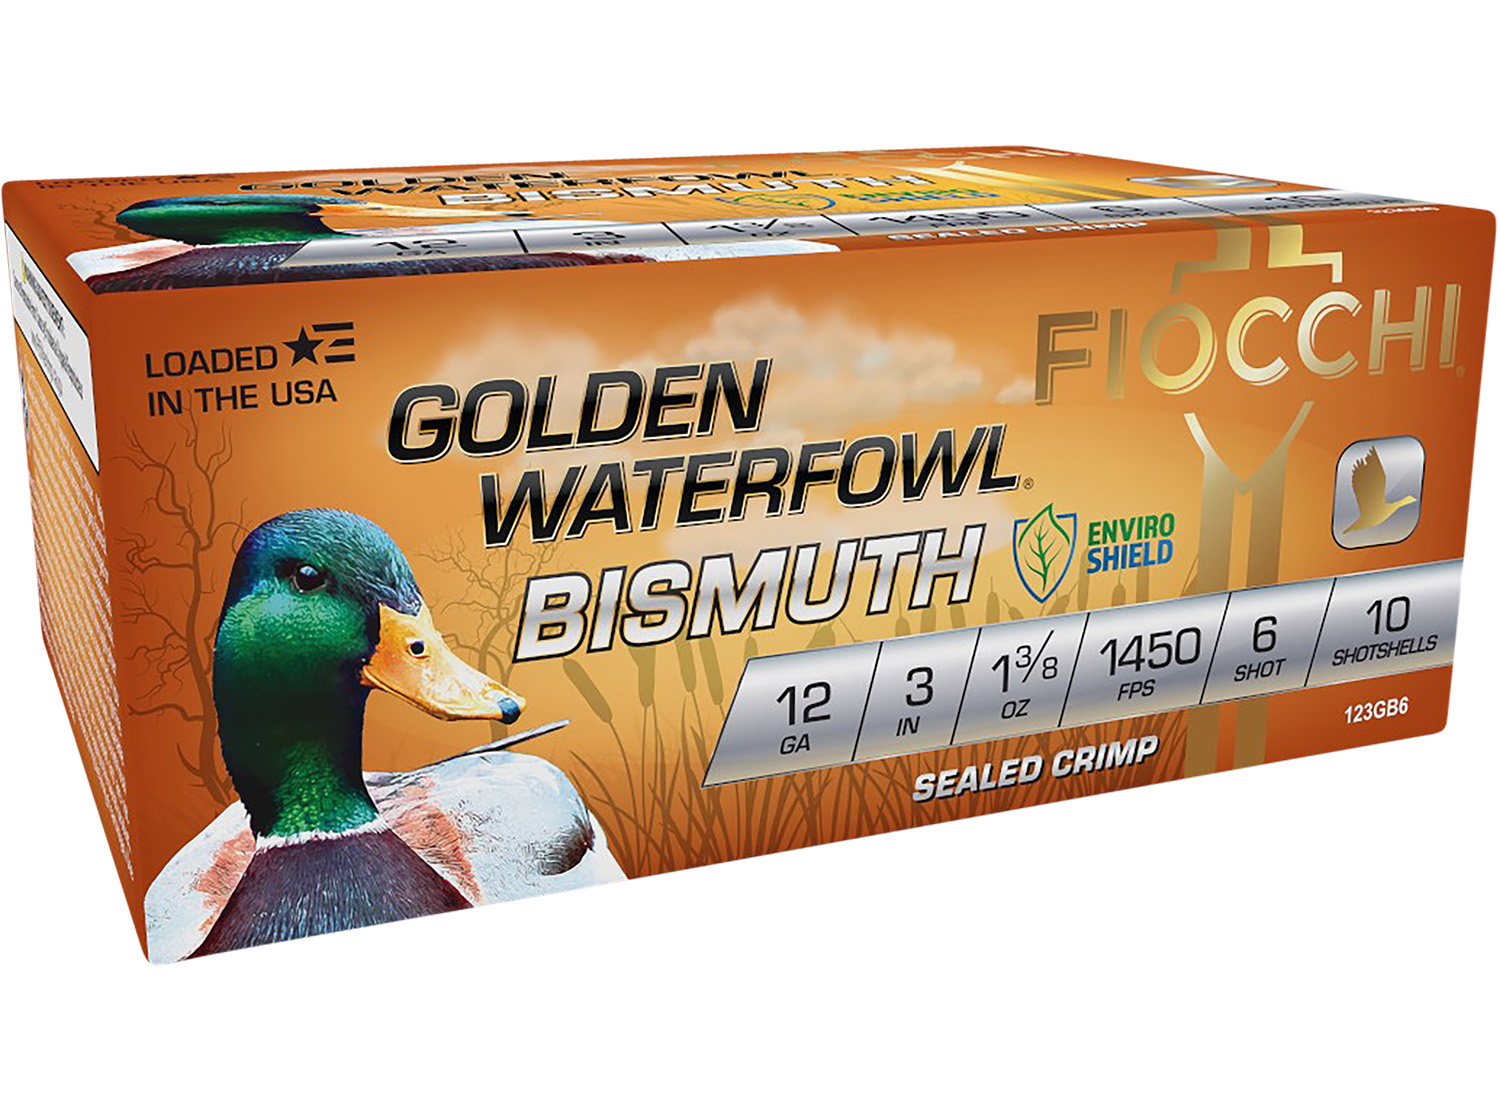 Fiocchi 123GB6 Golden Waterfowl Bismuth 12 Gauge 3